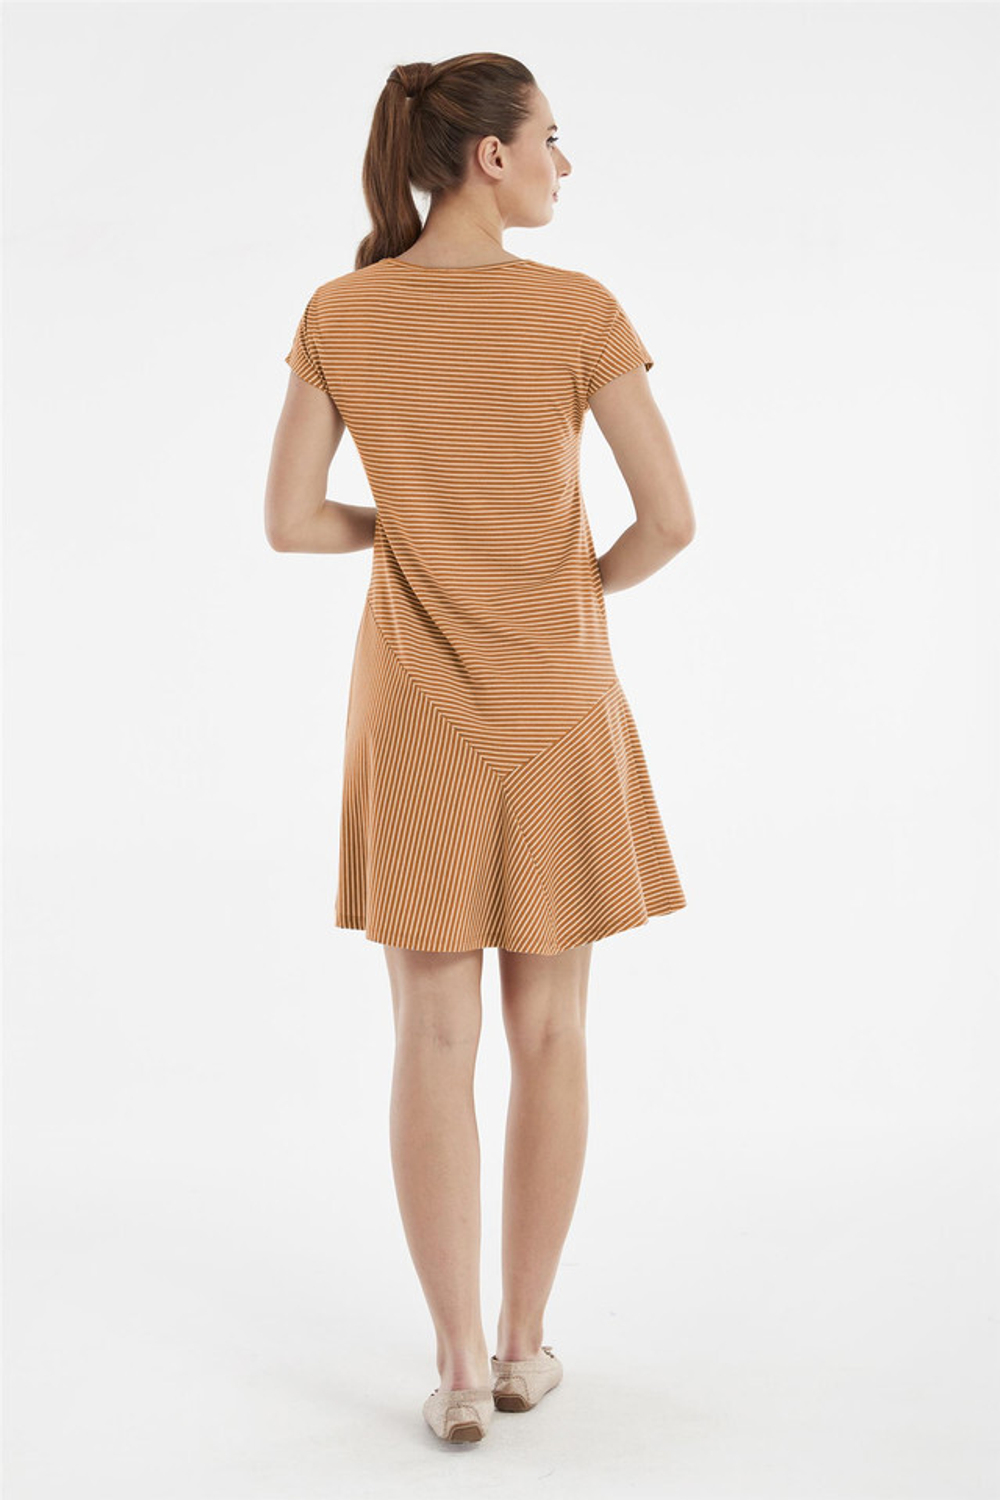 RELAX MODE / Платье женское летнее повседневное миди вискоза - 45342